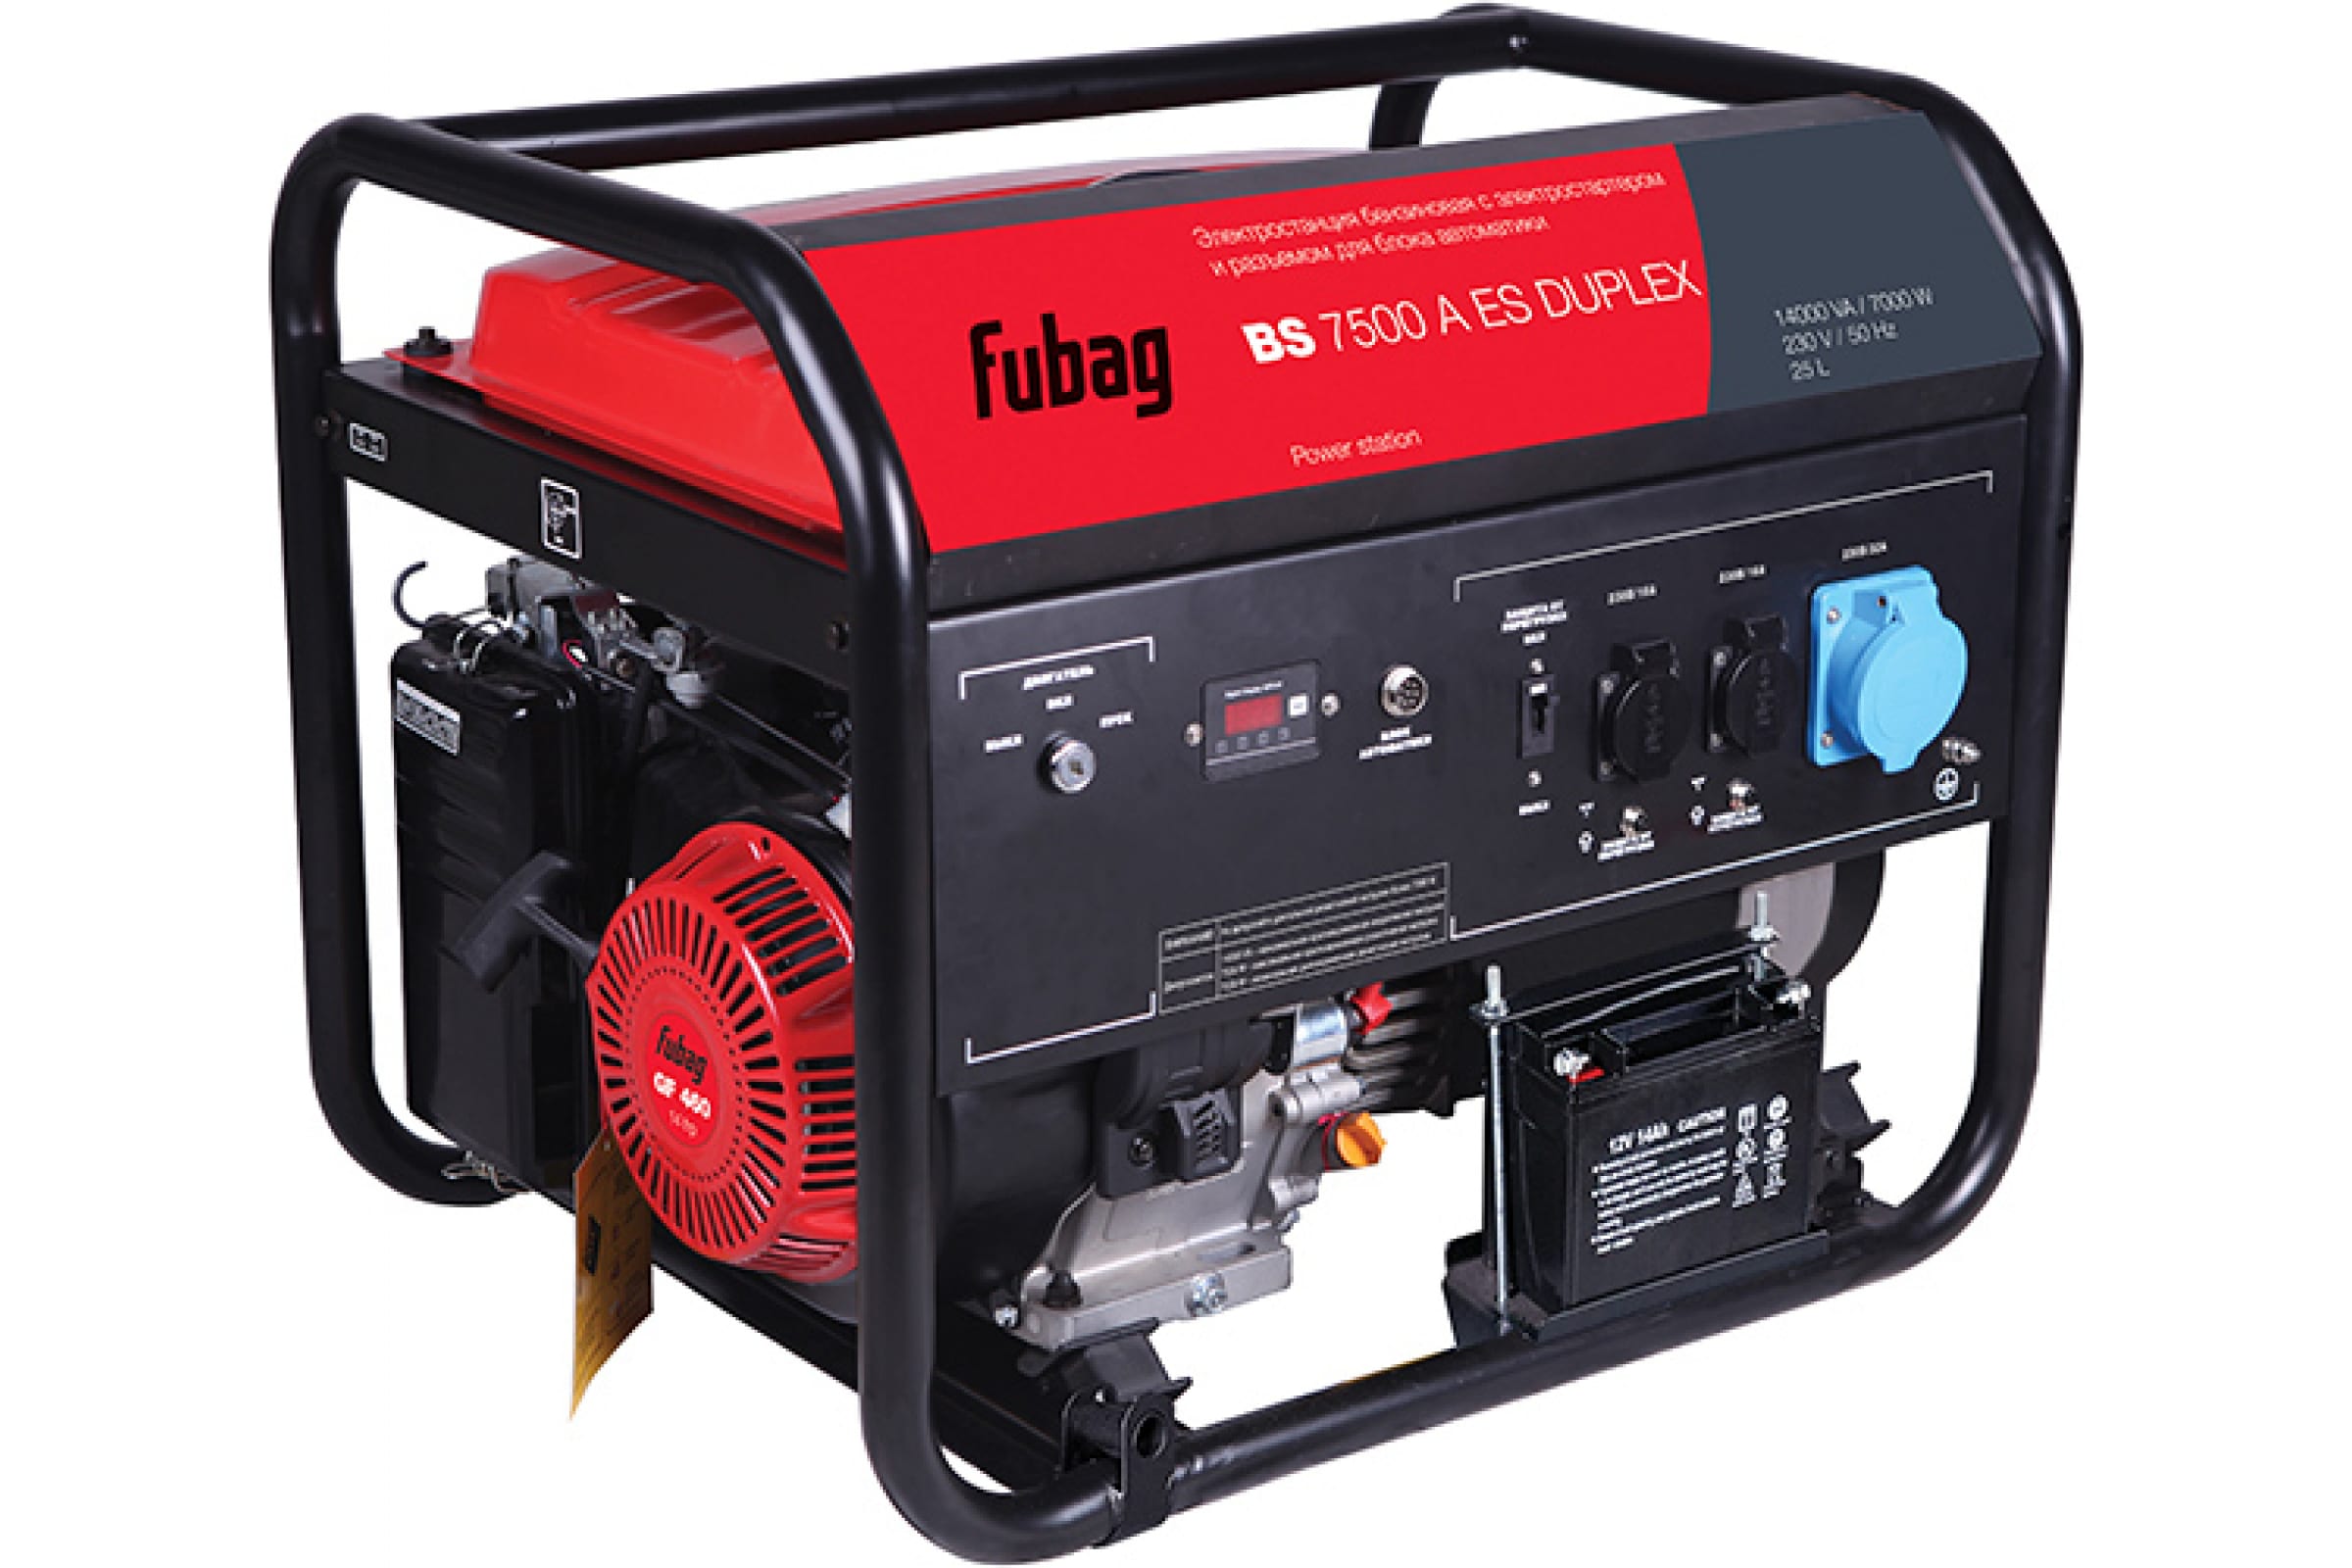 Генератор бензиновый Fubag BS 7500 A ES Duplex, 7000 Вт